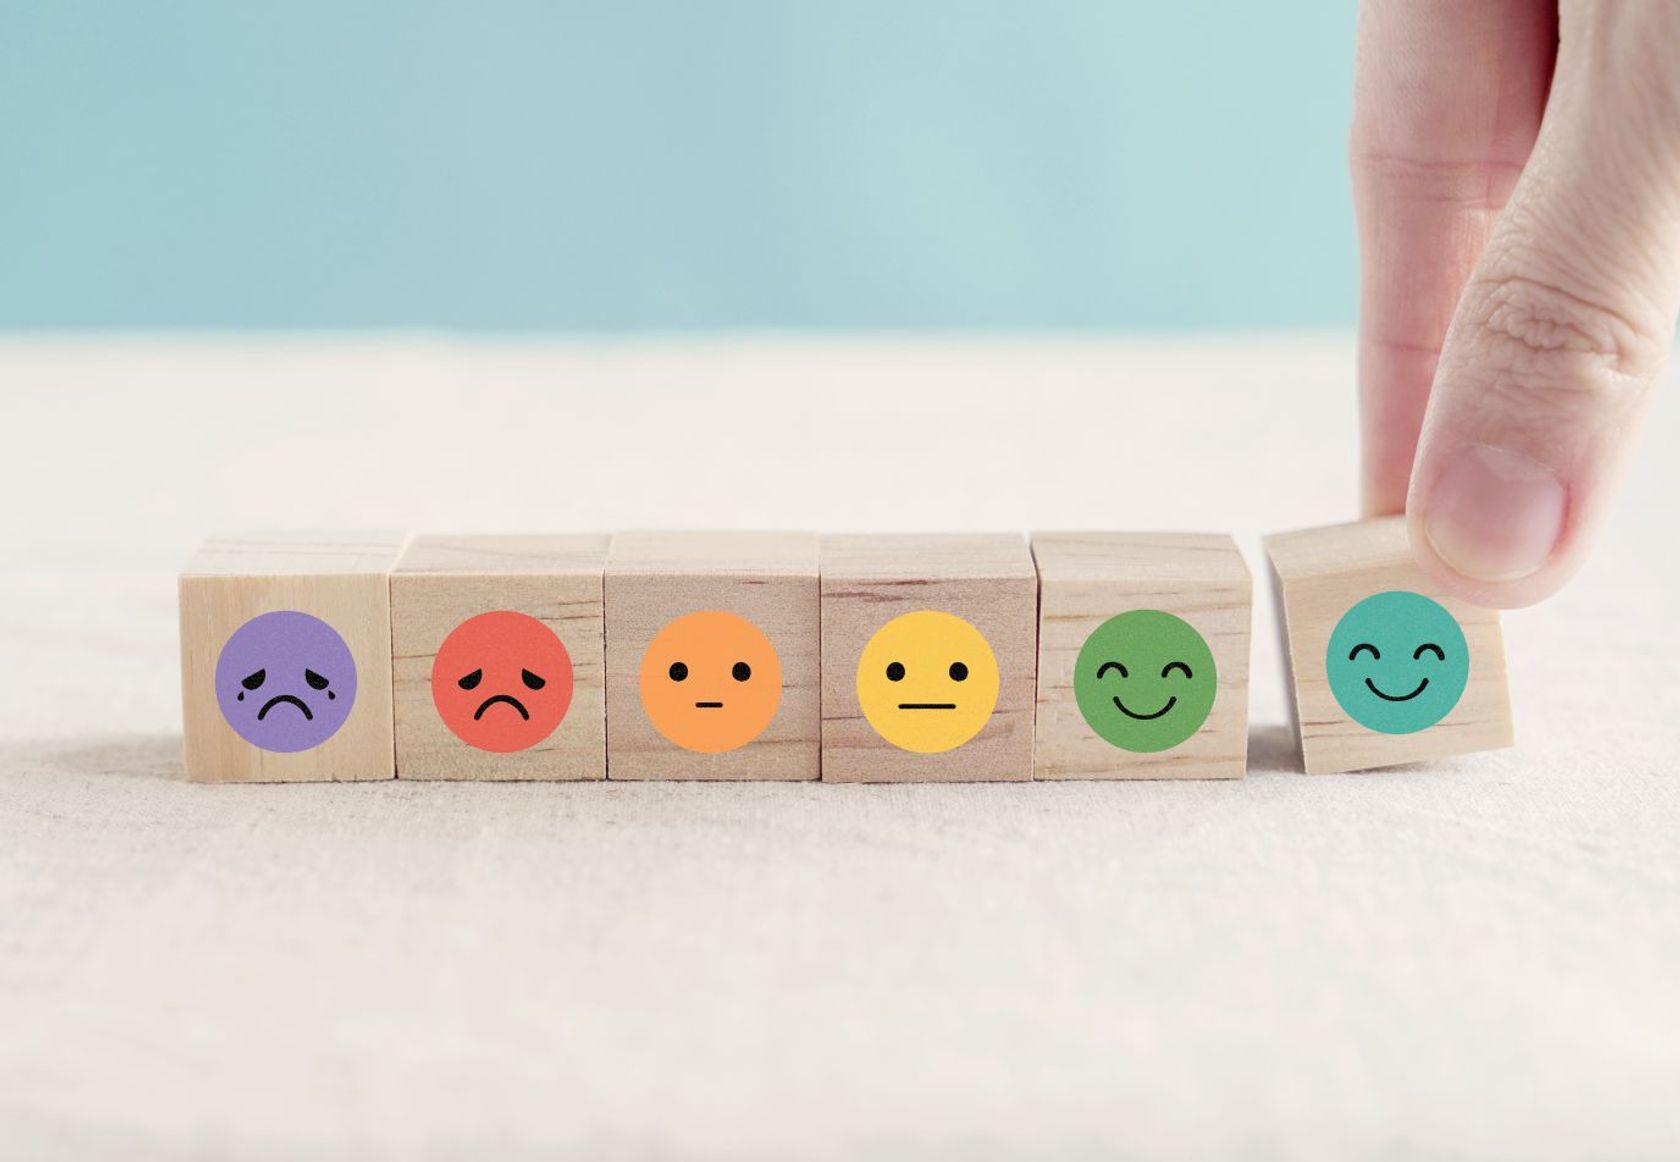 Sechs Smileys in verschiedenen Stimmungslagen, von weinend bis lachend, sind auf kleinen Holzwürfeln abgebildet. 